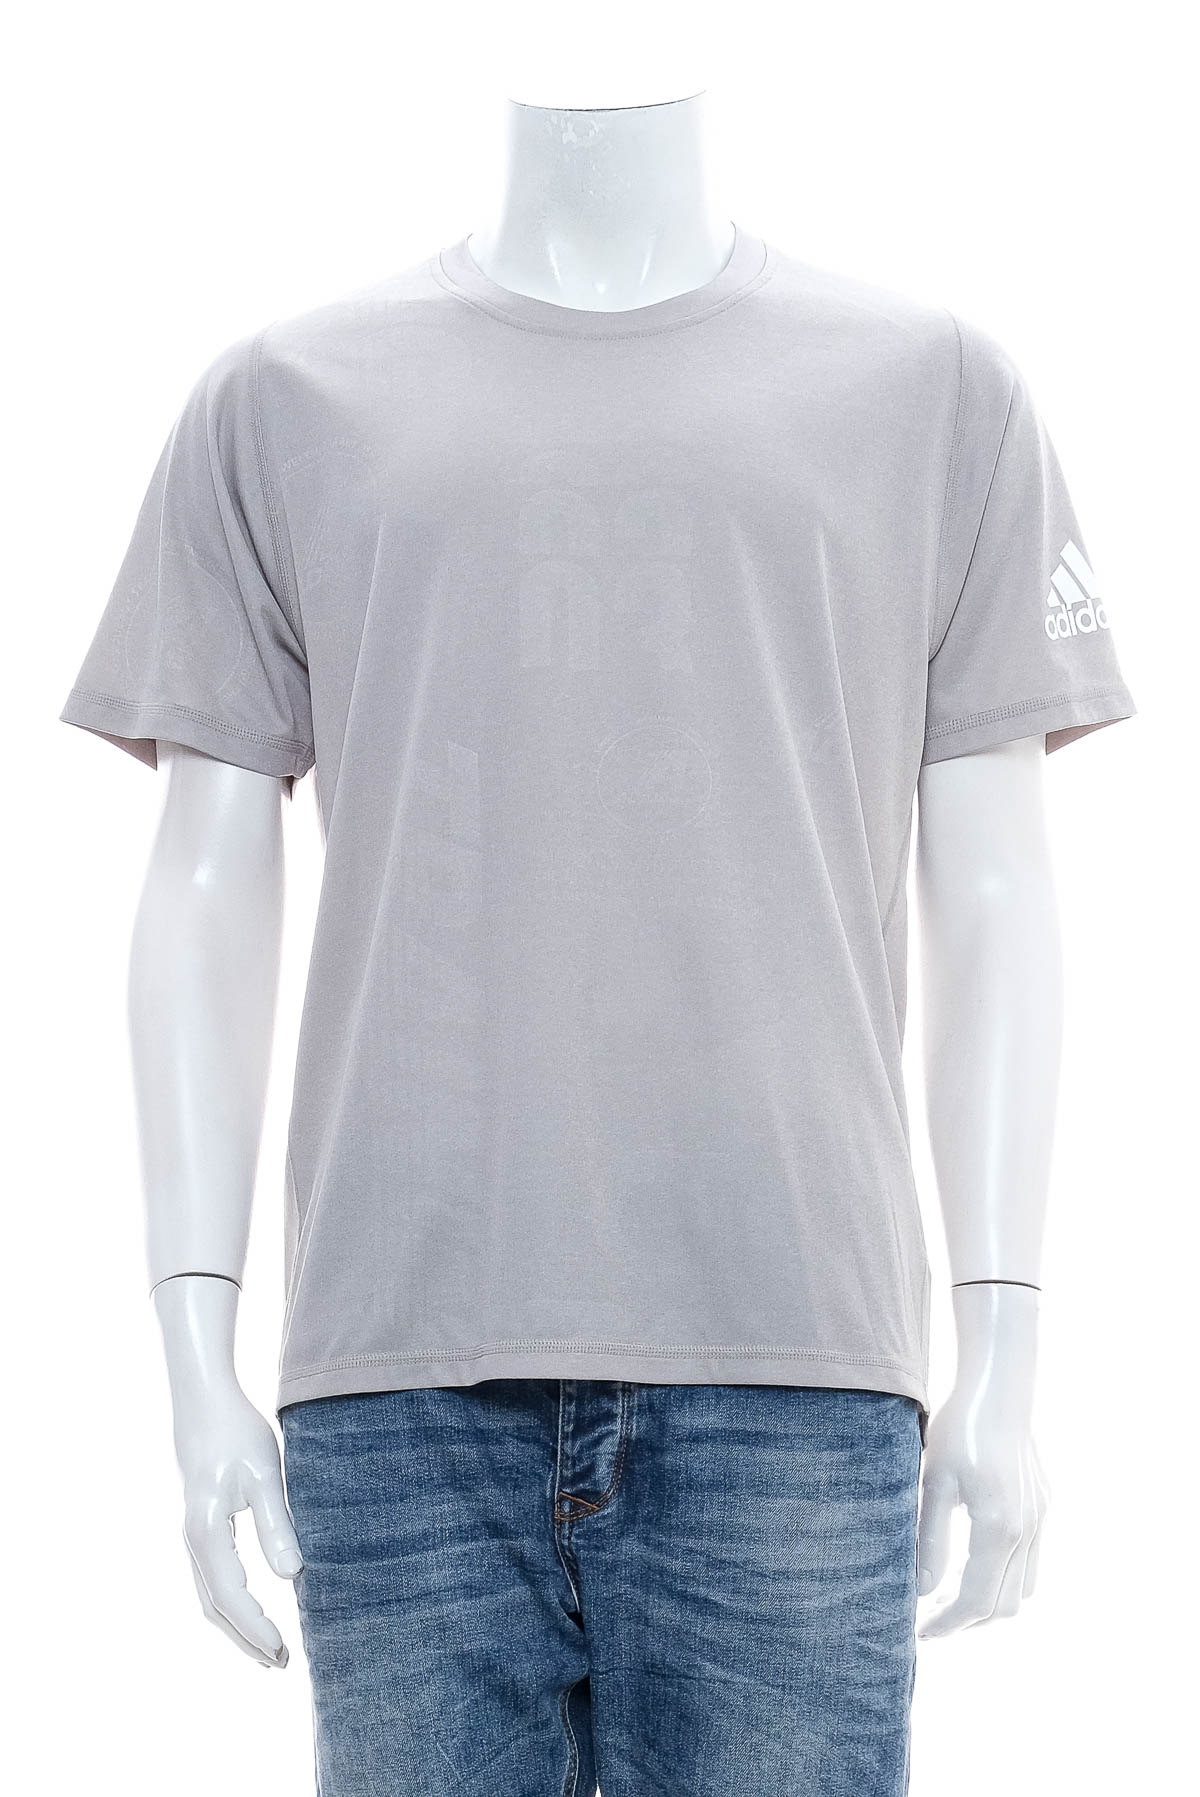 Αντρική μπλούζα - Adidas - 0